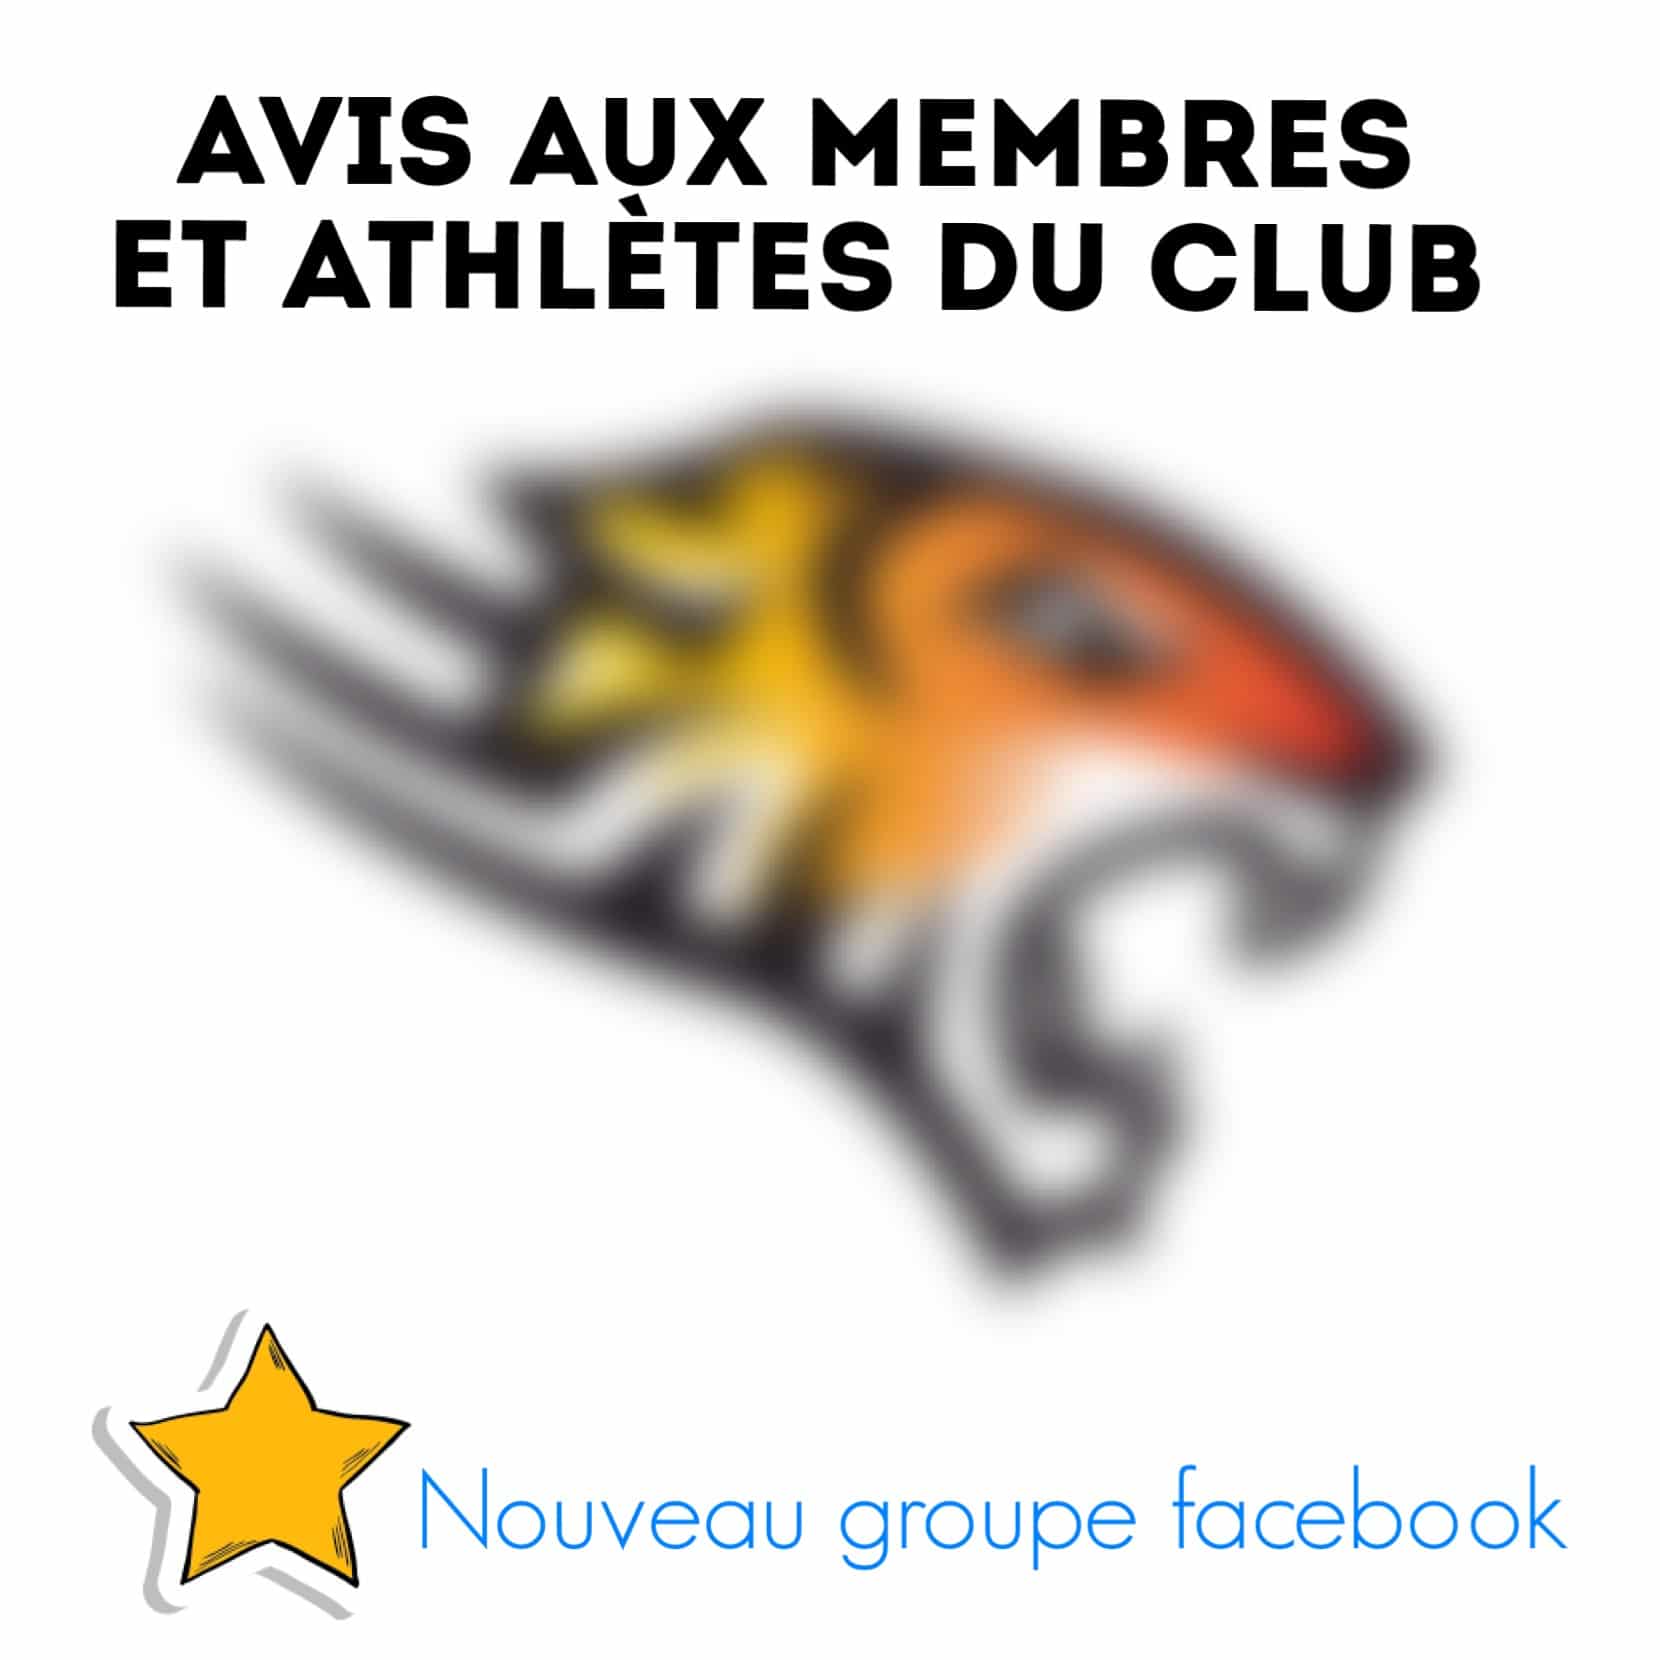 Groupe Facebook pour les membres et athlètes du club